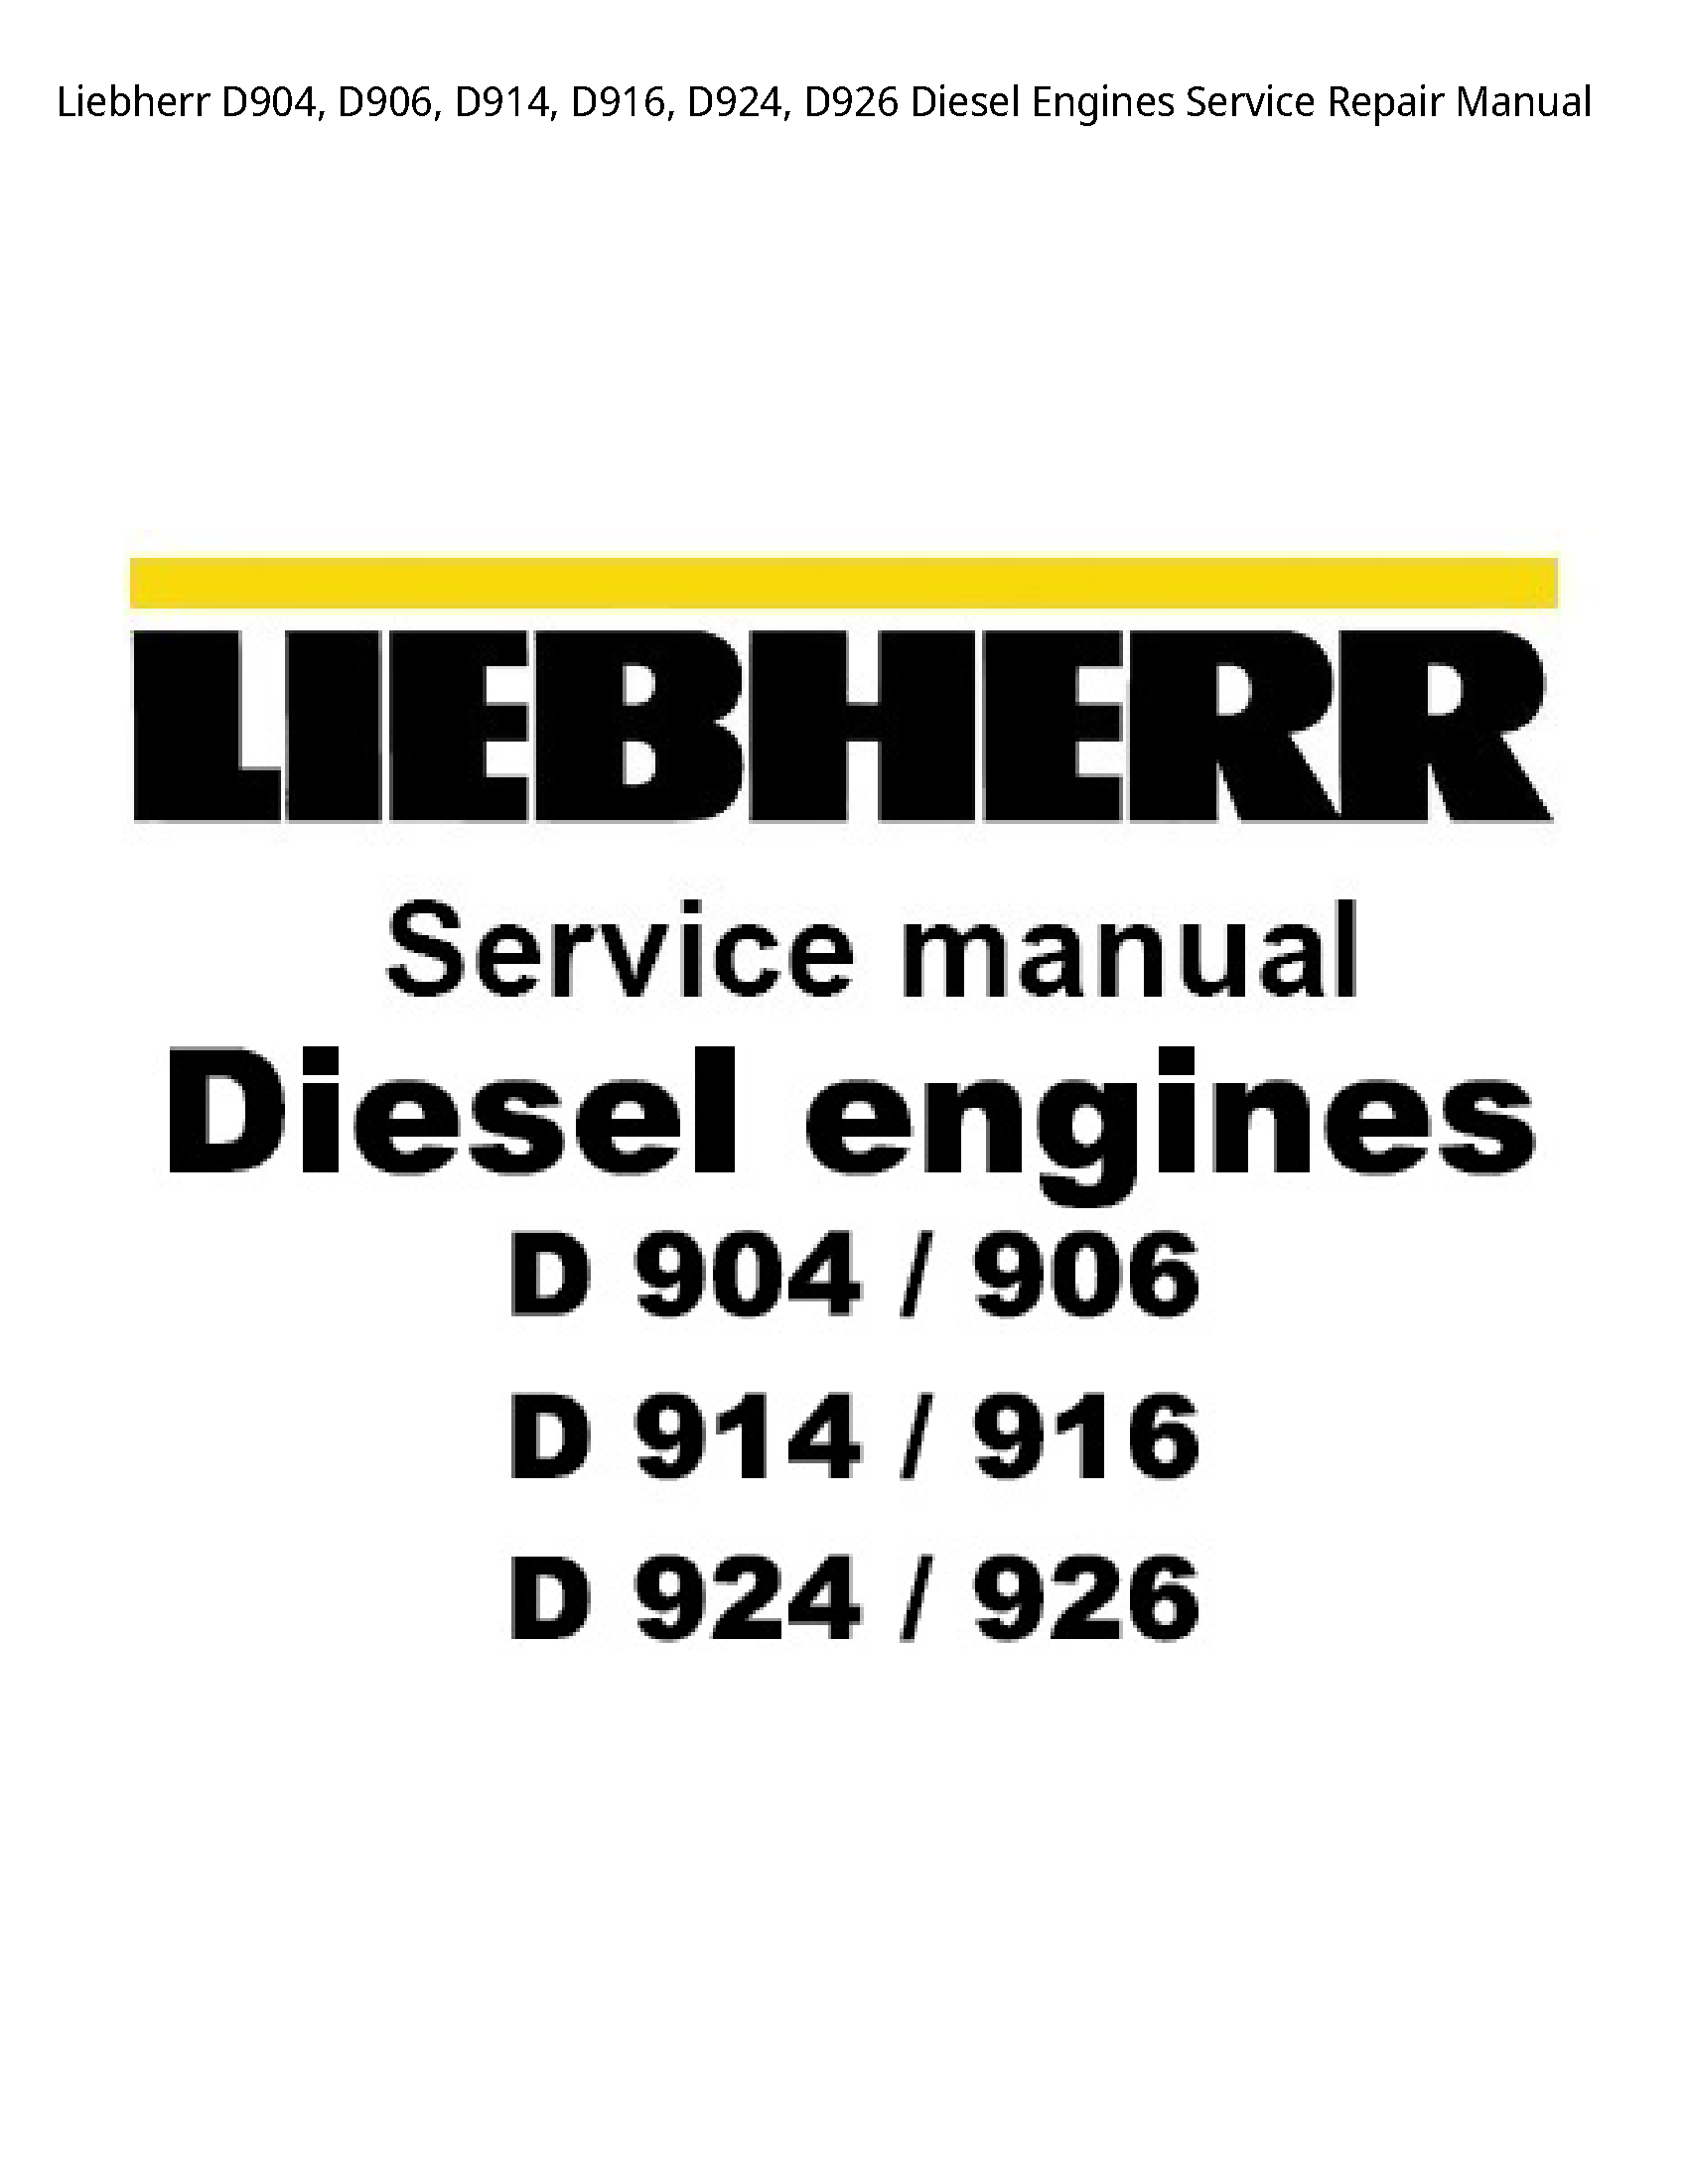 Liebherr D904 Diesel Engines manual